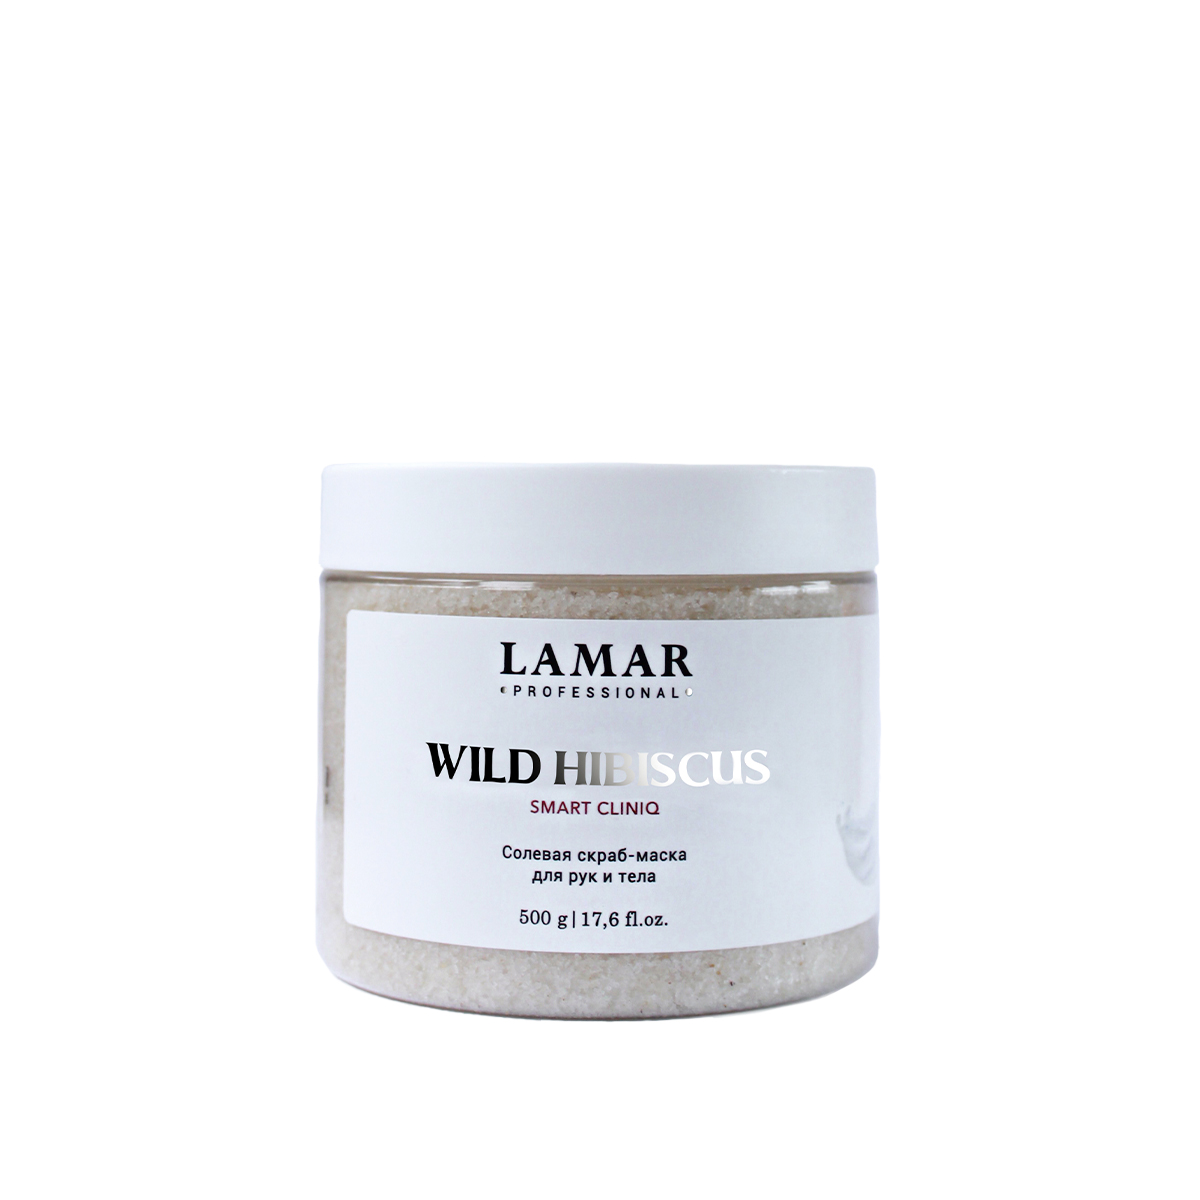 Скраб-маска для рук и тела Lamar Professional Wild hibiscus солевая 500 г грелка термохимическая солевая лор